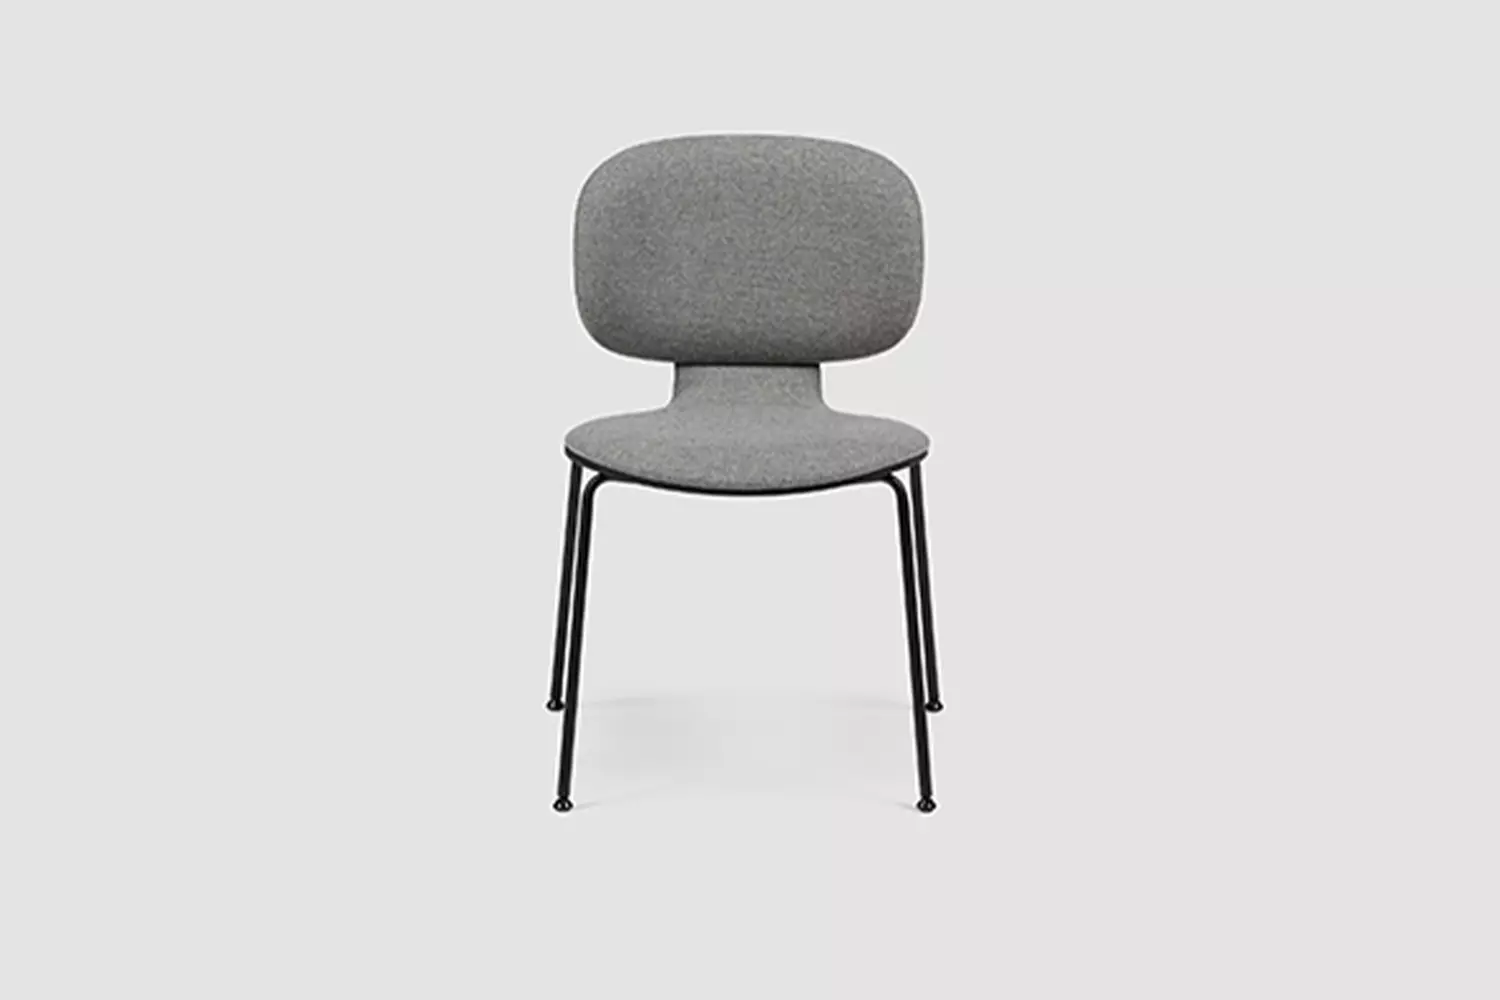 studio-chair-4-fuss, Pied en croix version tapissée version non tapissée Premium empilable Siège, meubles de bureau Bene, Image 5